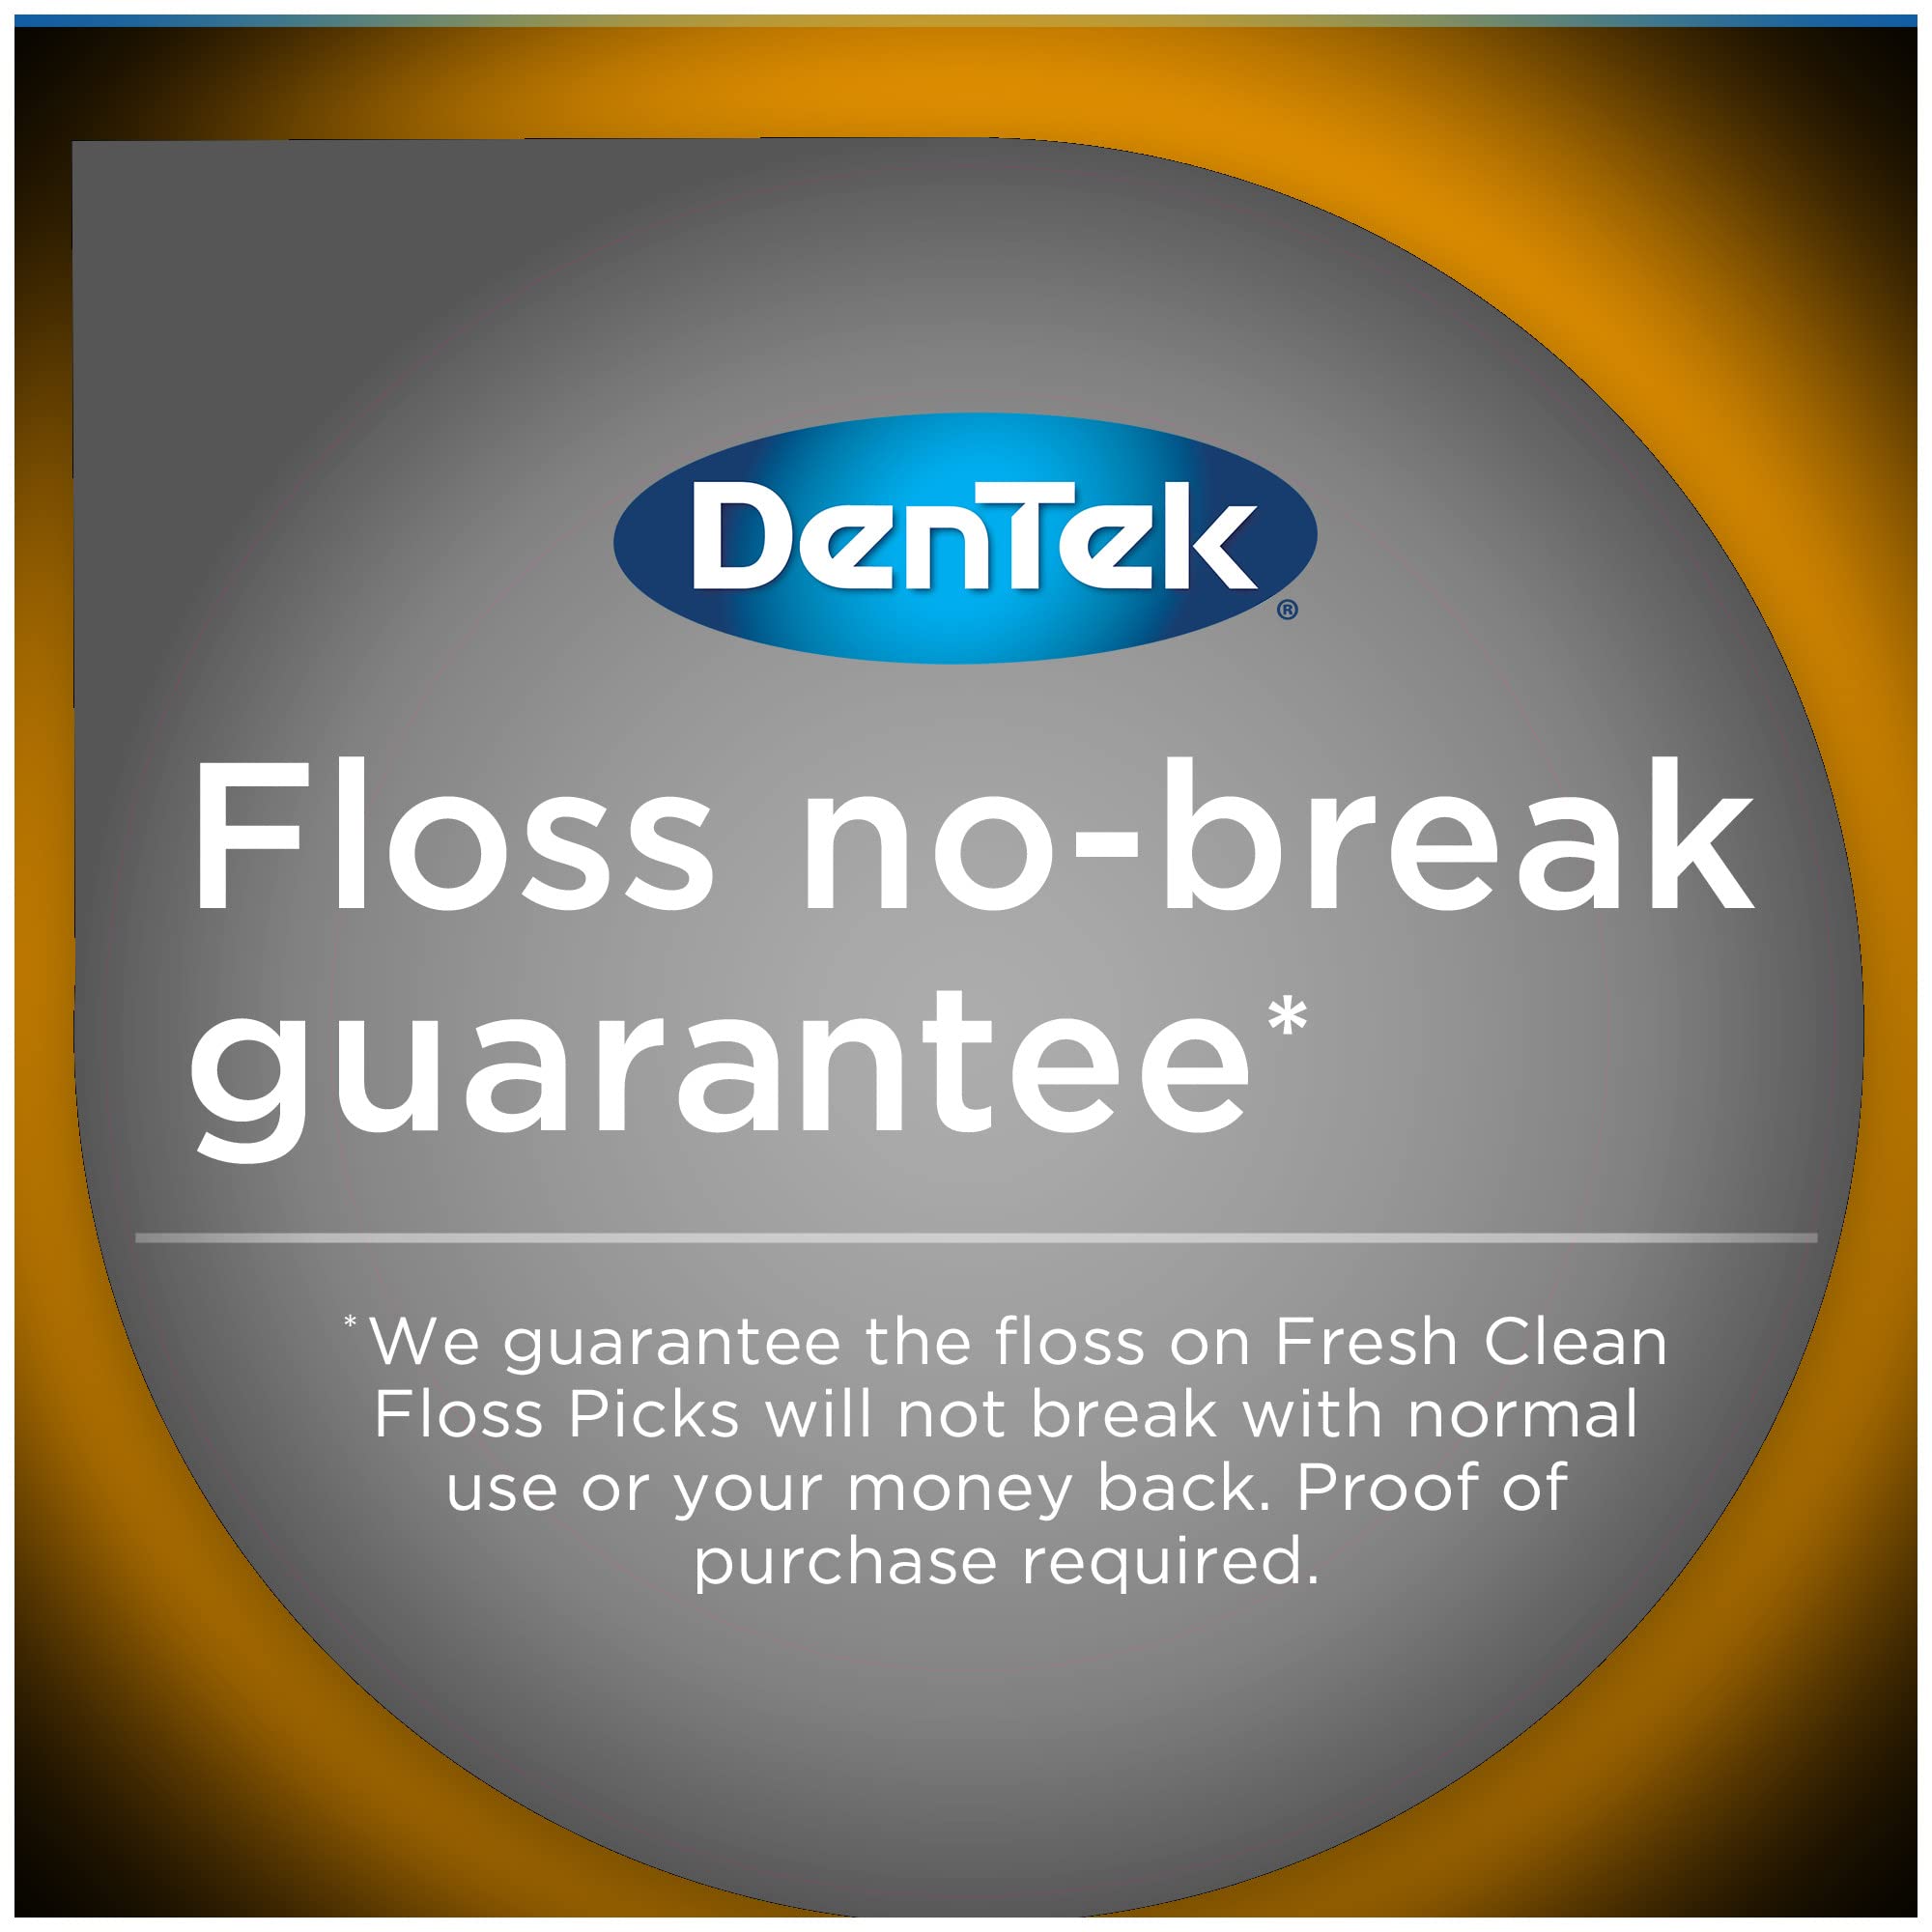 DenTek, Complete Clean Floss Picks 75 Floss Picks Pack of 3, 225 Count